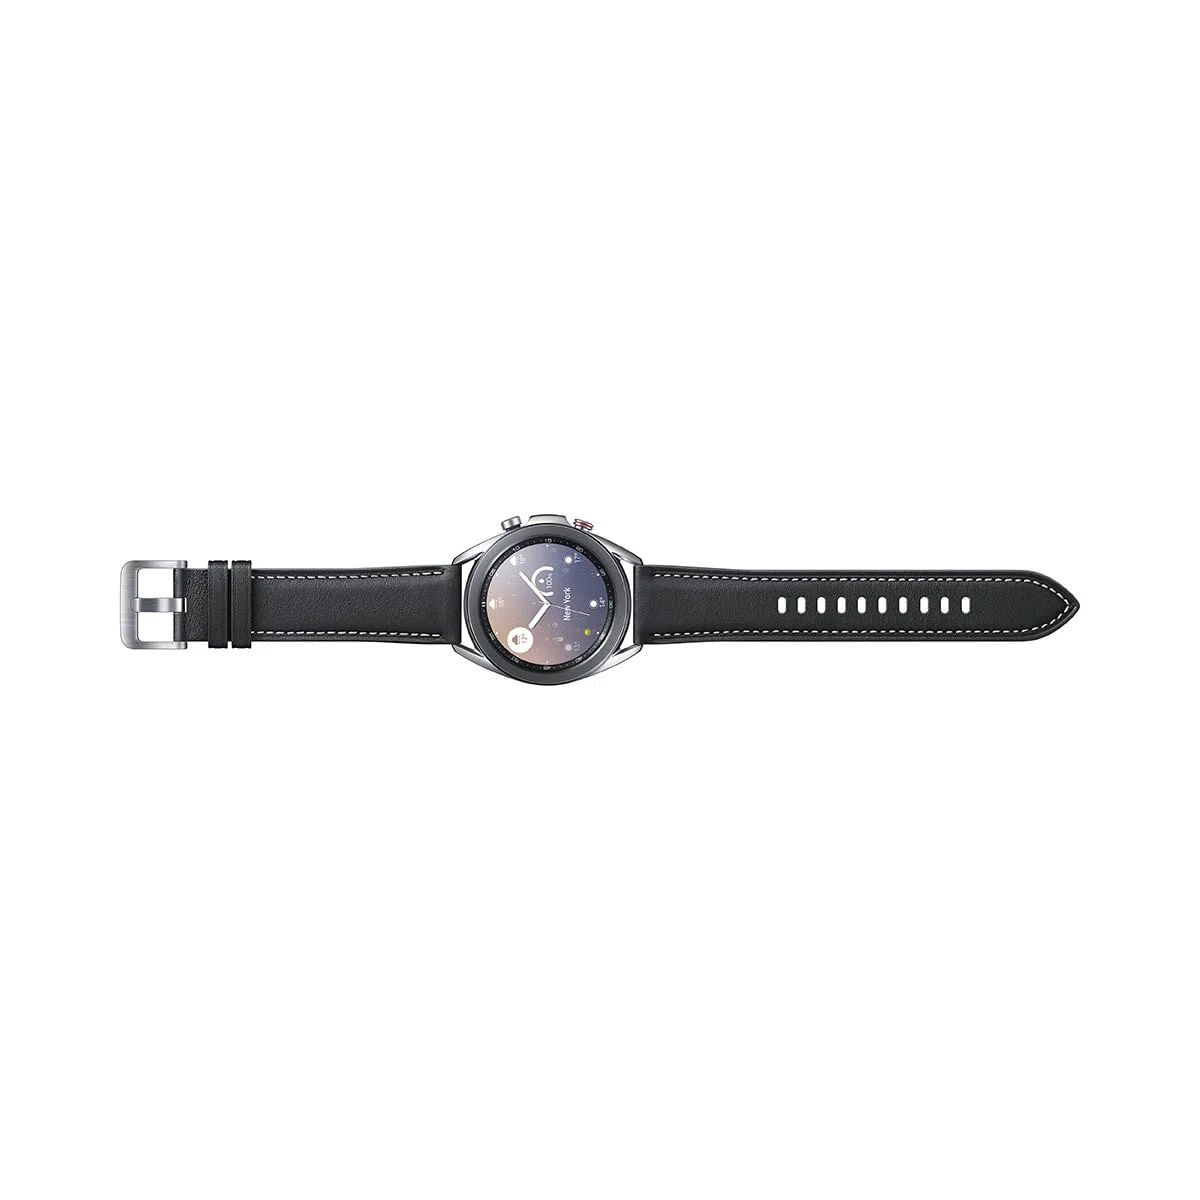 kit-smartwatch-samsung-2-pecas--galaxy-watch3-41mm-lte-prata---galaxy-active2-lte-44mm-preto-13.jpg